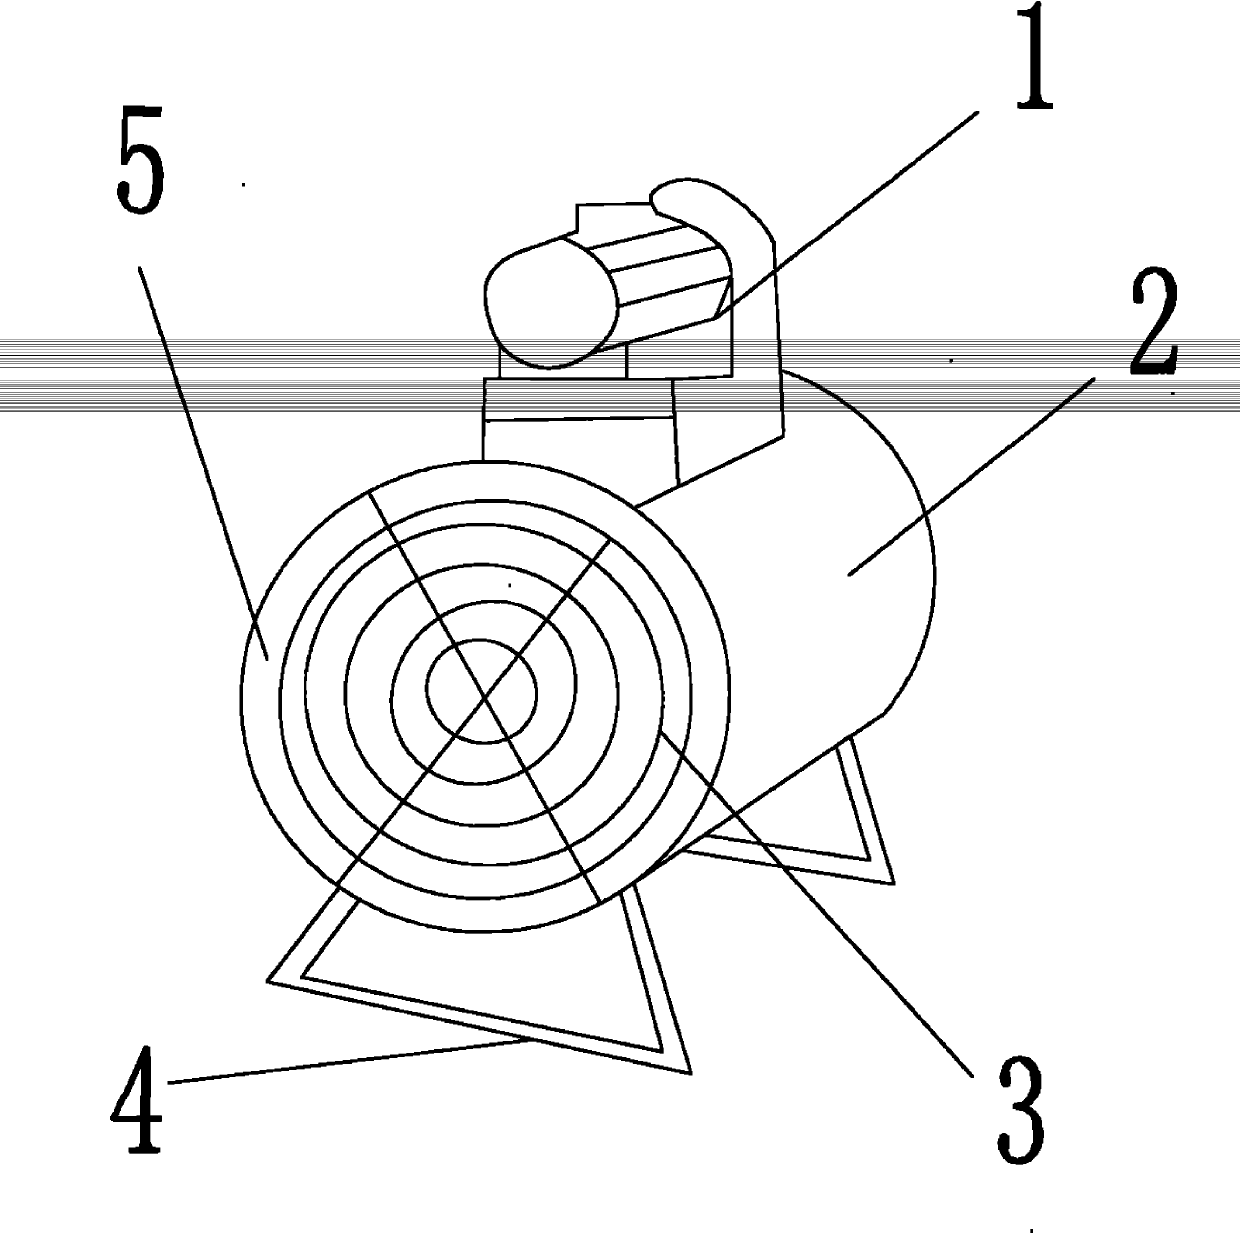 Noise-reducing axial flow fan